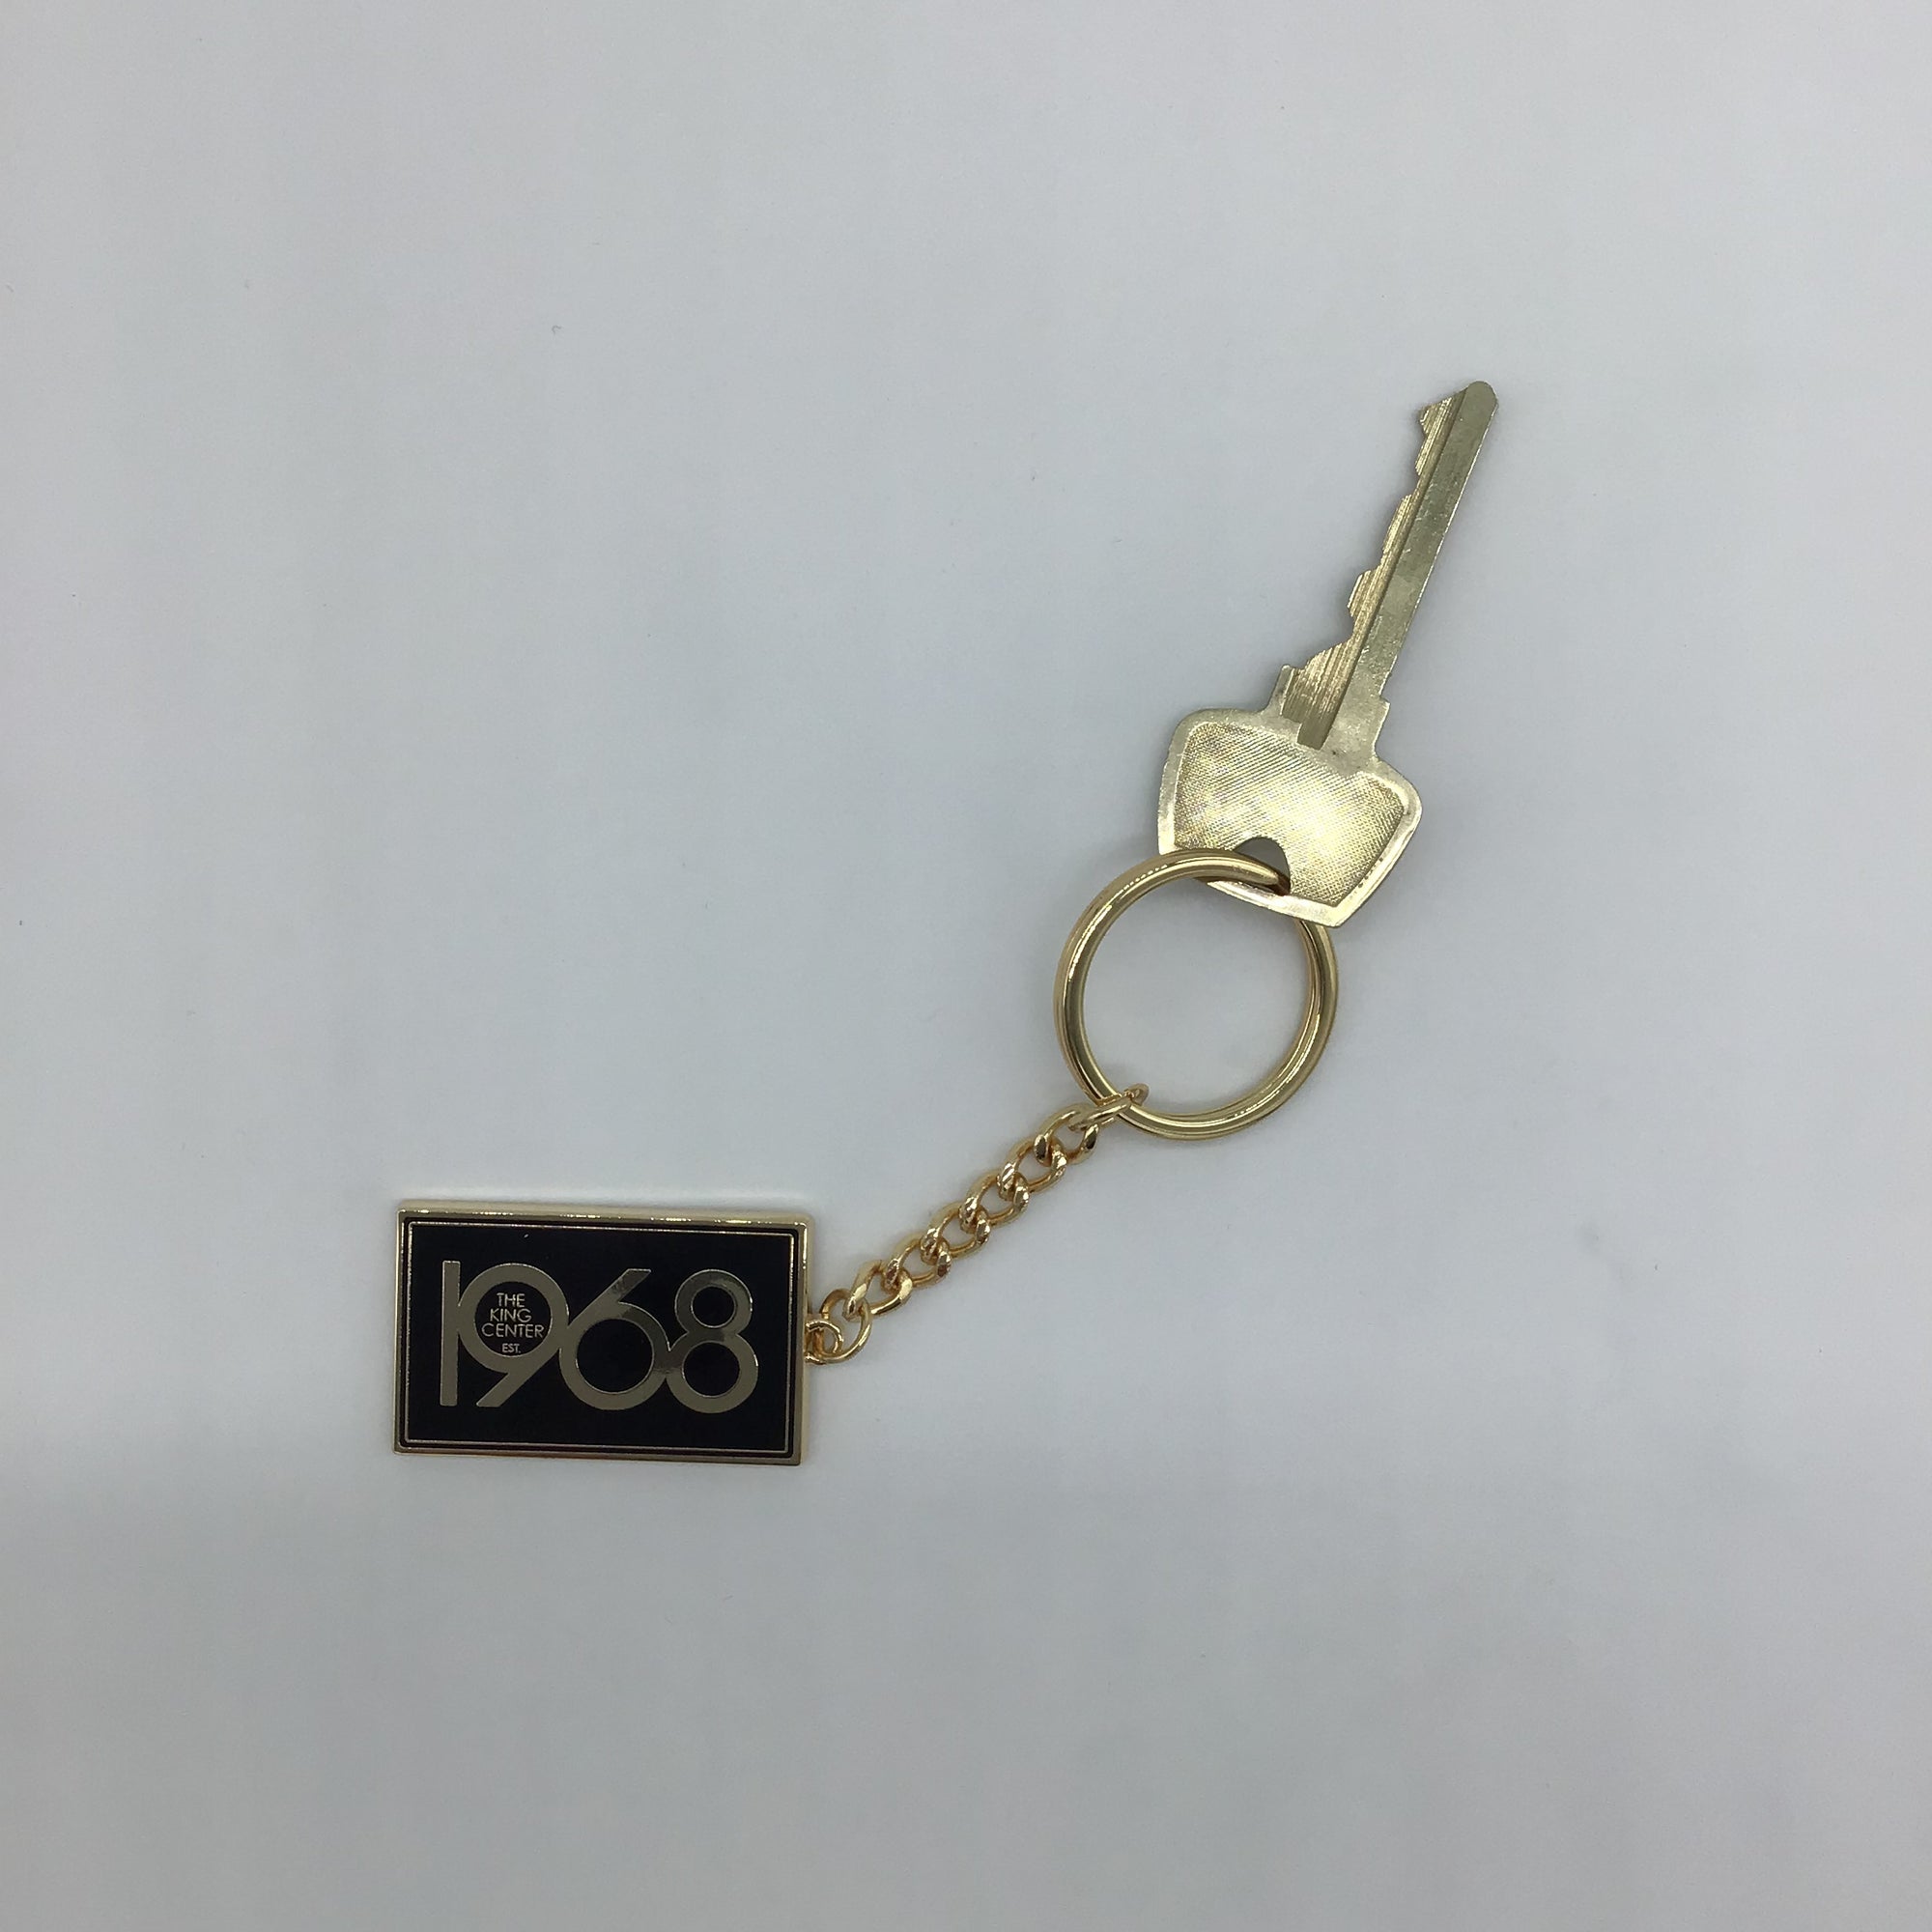 1968 Gold Keychain